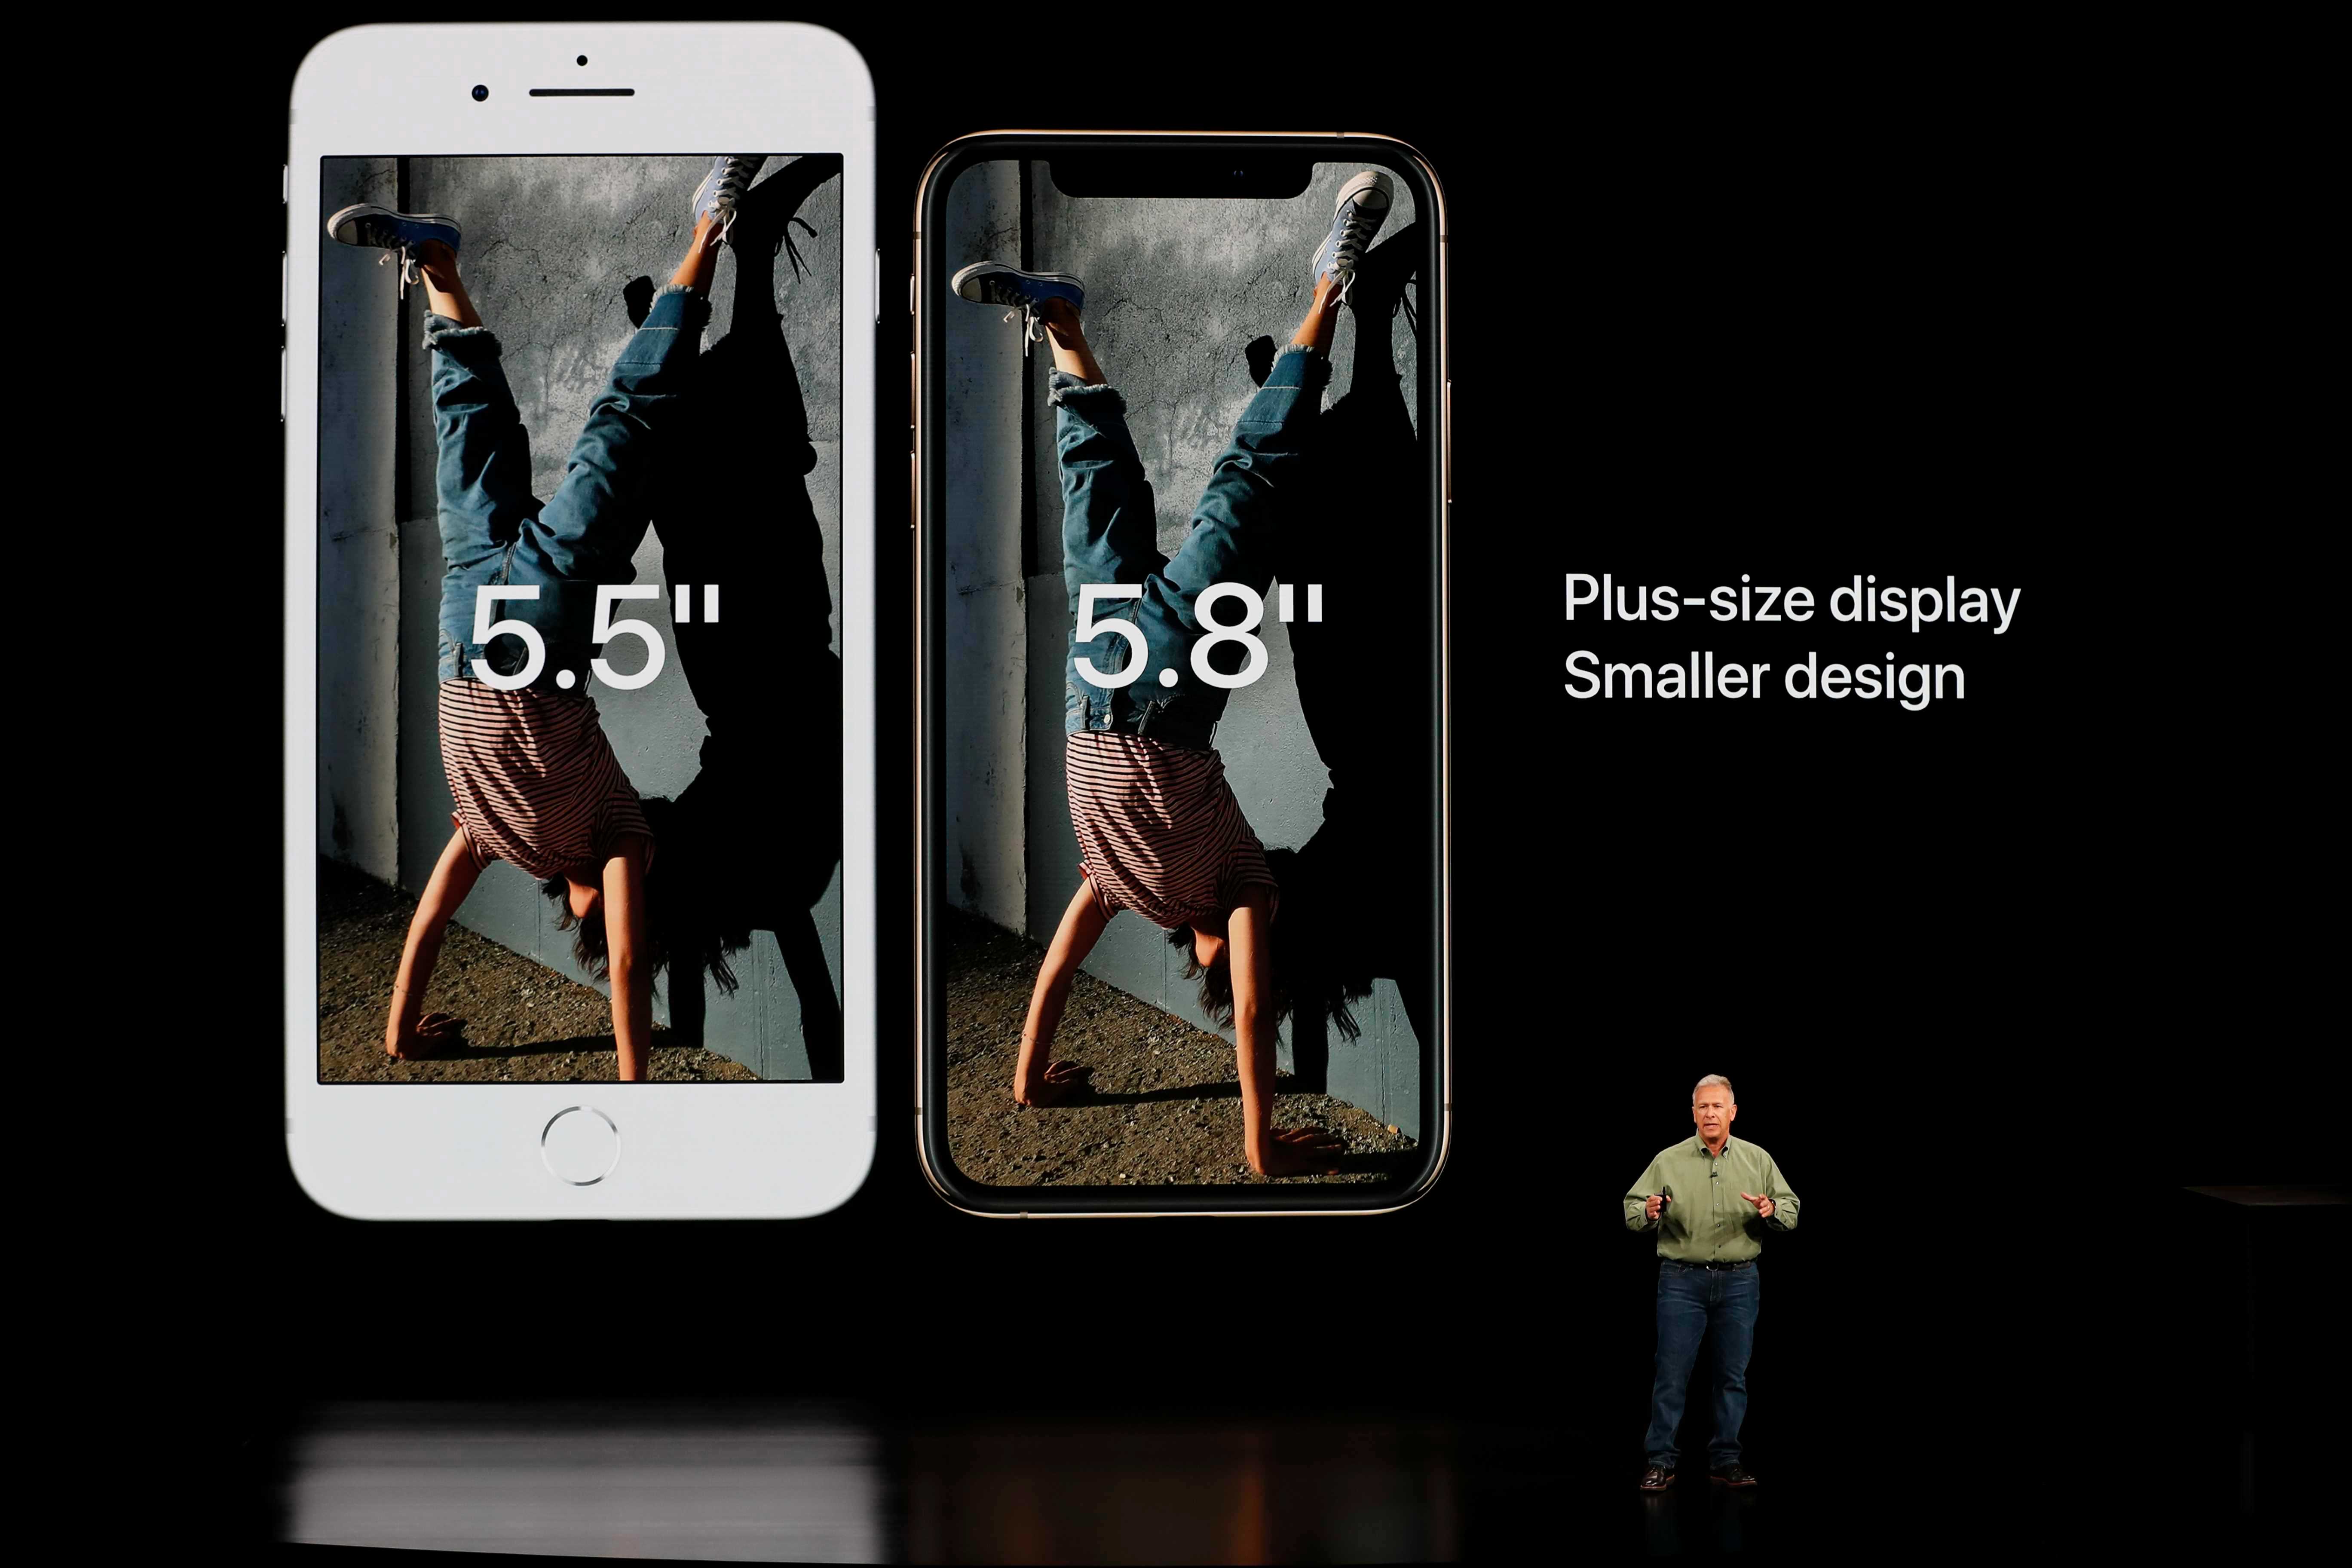         Najväčší iPhone 2019 by mohol byť väčší ako Apple Model 2018, podľa mobilných povestí 6,7 sú palce